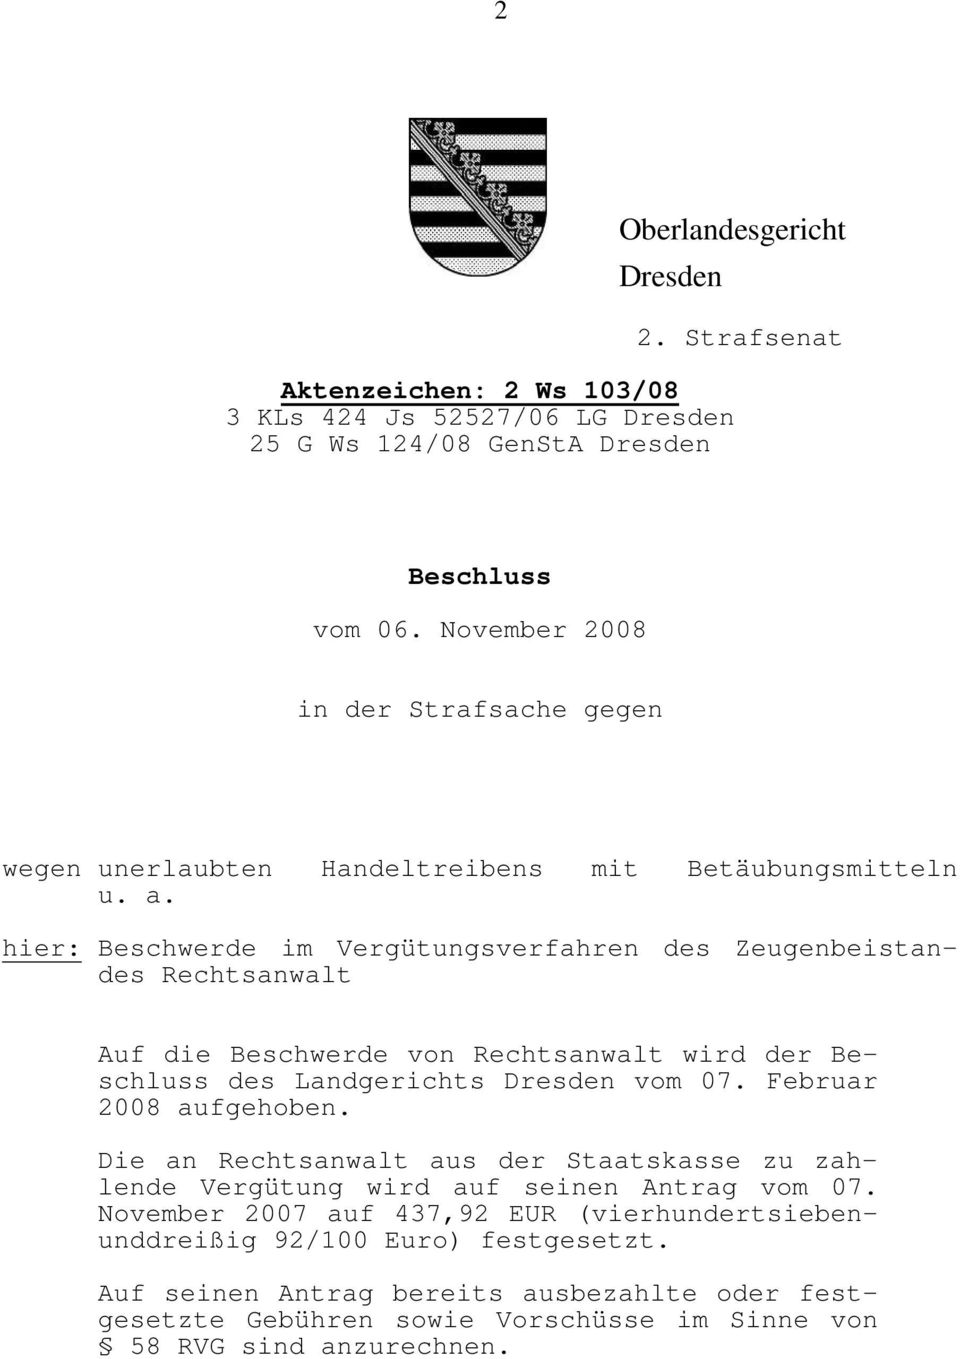 hier: Beschwerde im Vergütungsverfahren des Zeugenbeistandes Rechtsanwalt Auf die Beschwerde von Rechtsanwalt wird der Beschluss des Landgerichts Dresden vom 07.